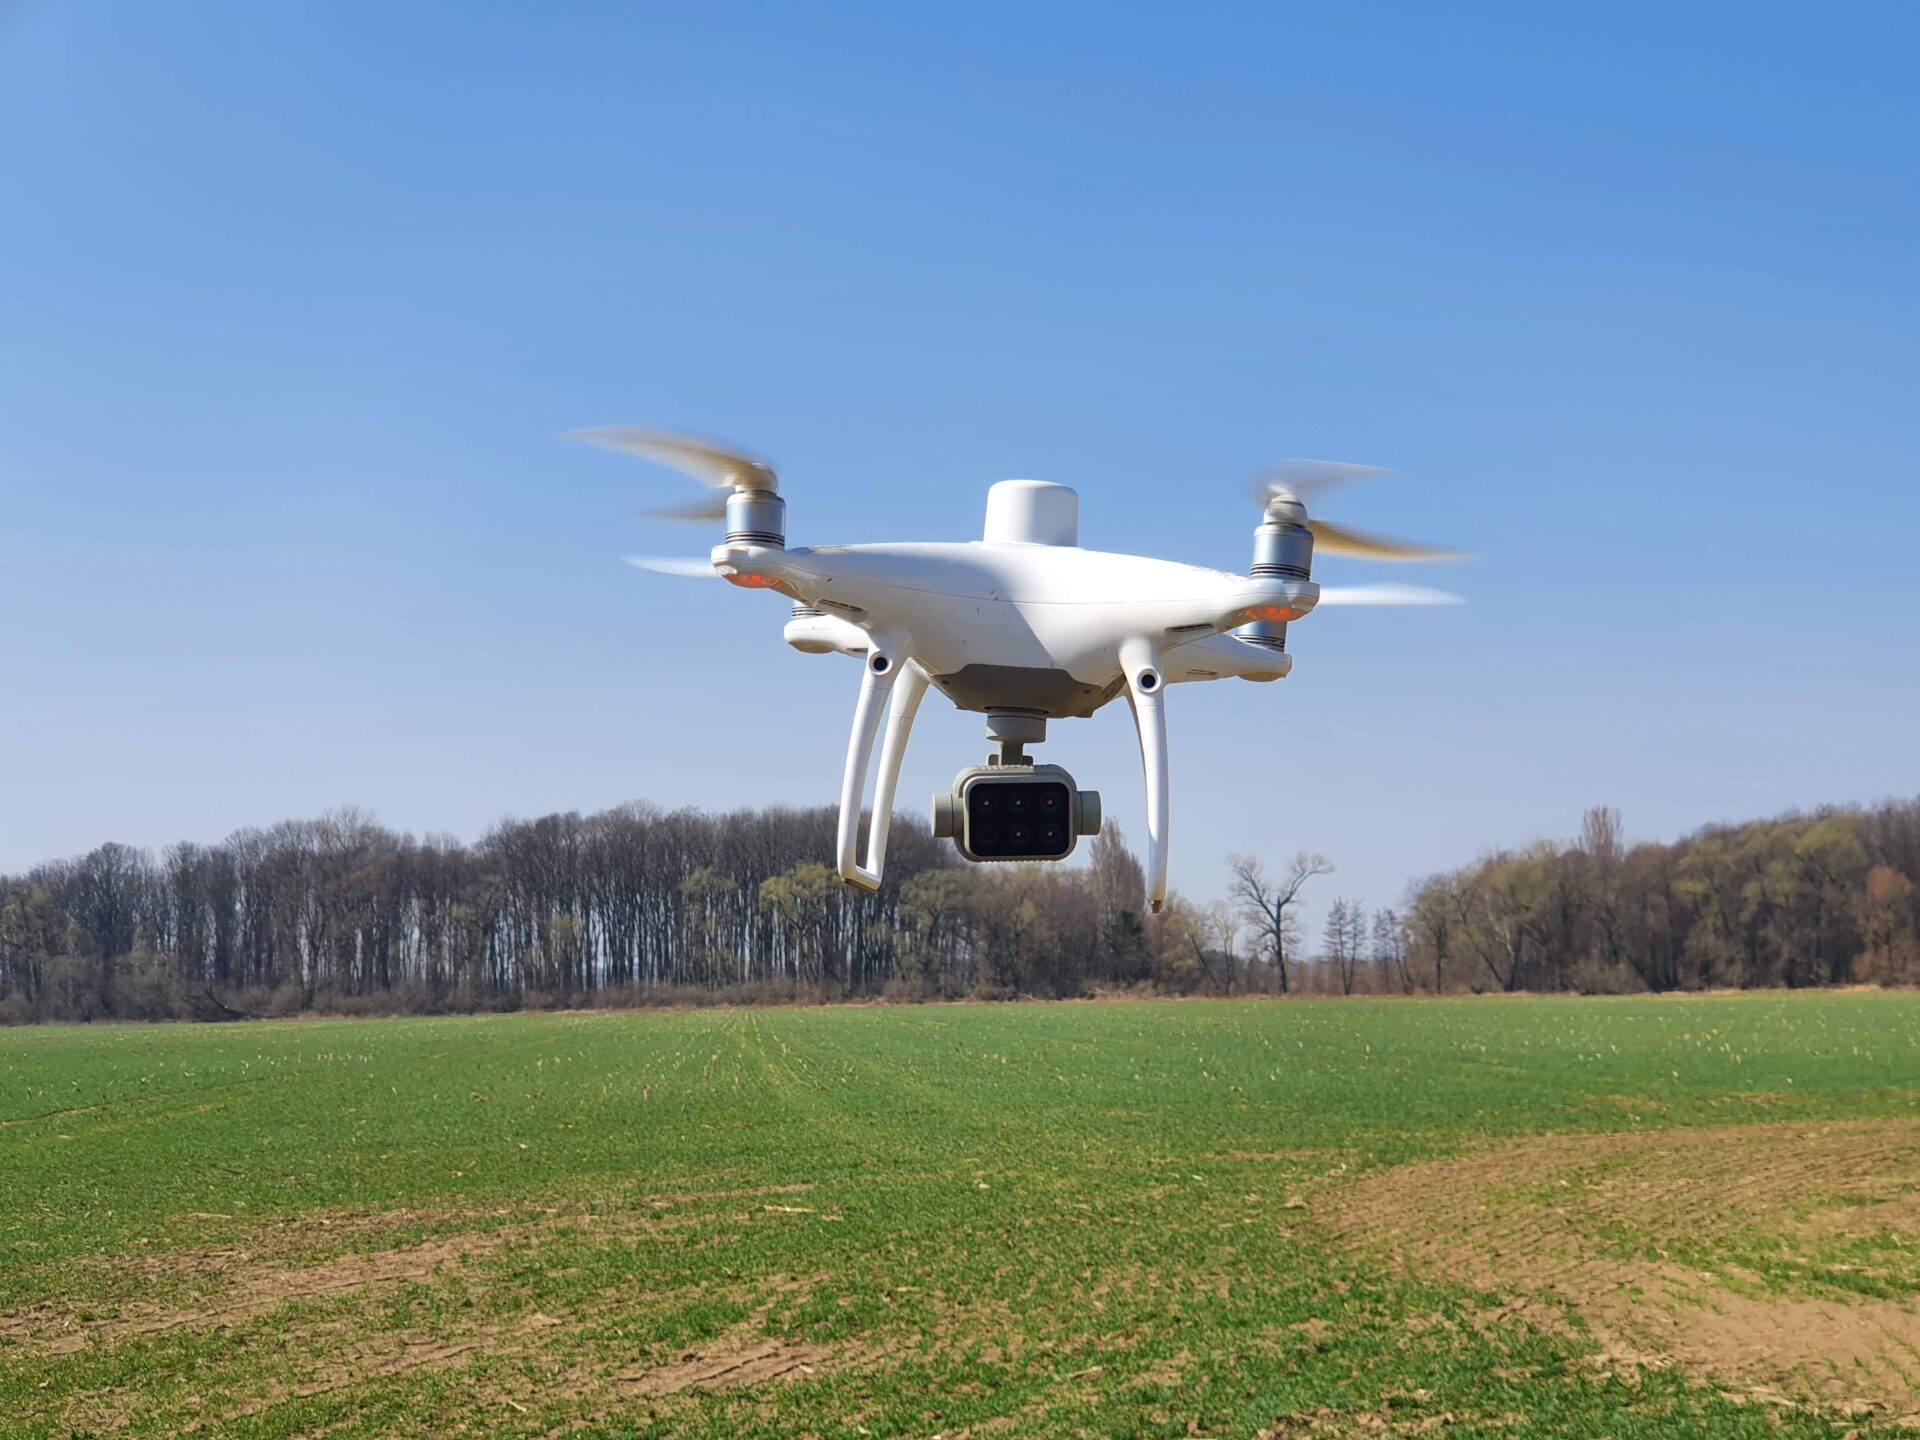 Bezpilotní prostředek DJI Phantom 4 Multispectral představují nenákladné drony využitelné v precizním zemědělství Foto Vojtěch Lukas